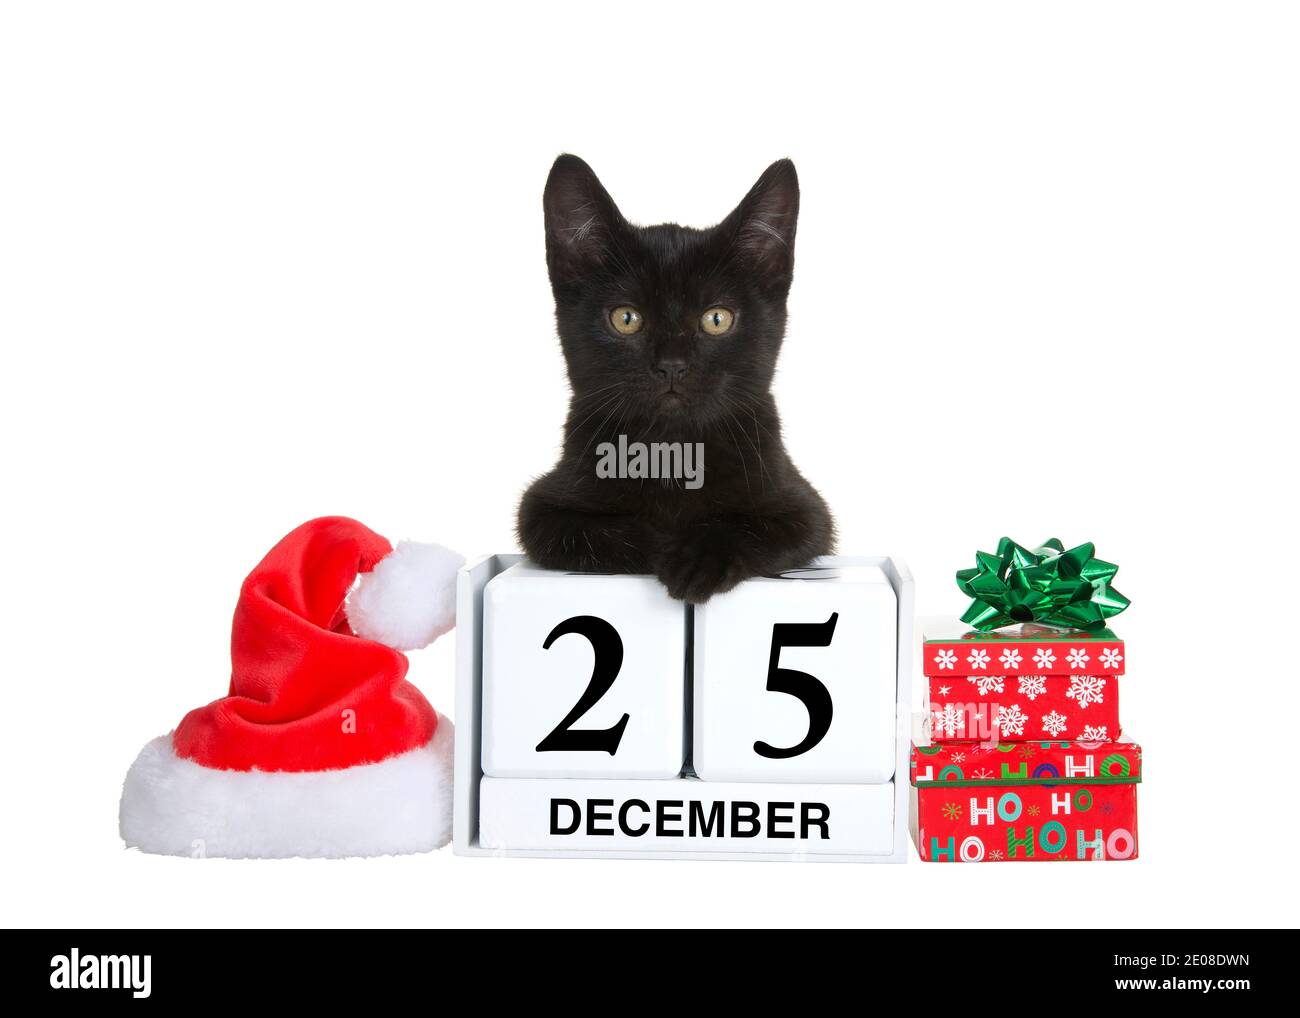 Adorable chaton noir décontracté sur des blocs de calendrier avec date de vacances pour Noël, décembre 25. Chapeau de père Noël et cadeaux à côté. Isolé sur blanc Banque D'Images